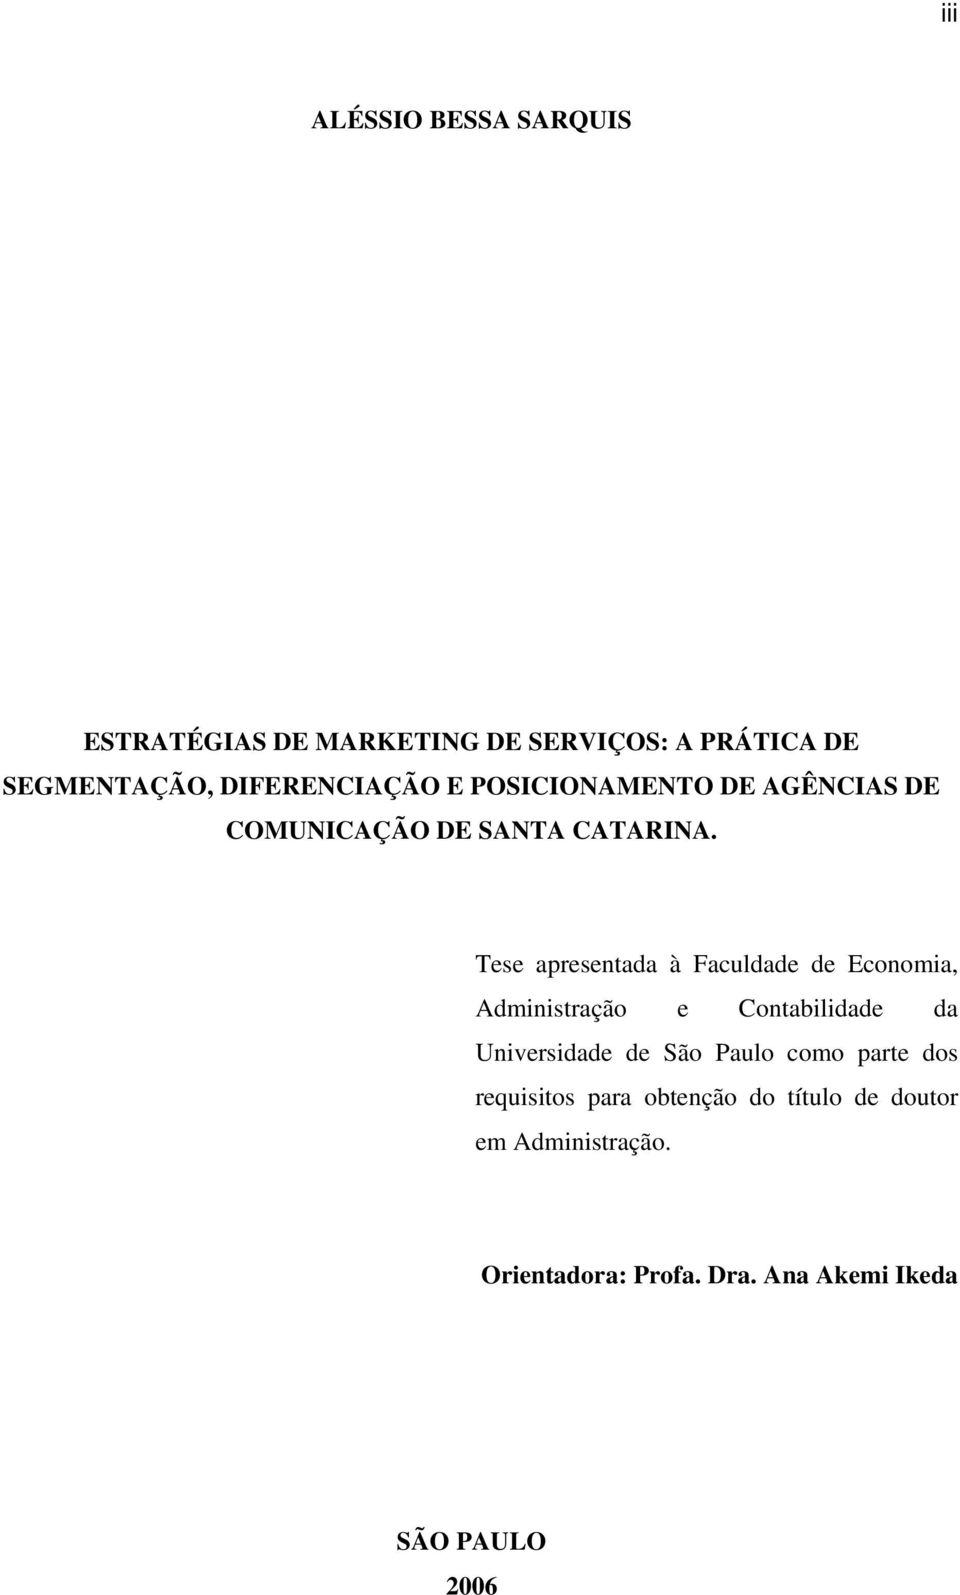 Tese apresentada à Faculdade de Economia, Administração e Contabilidade da Universidade de São Paulo